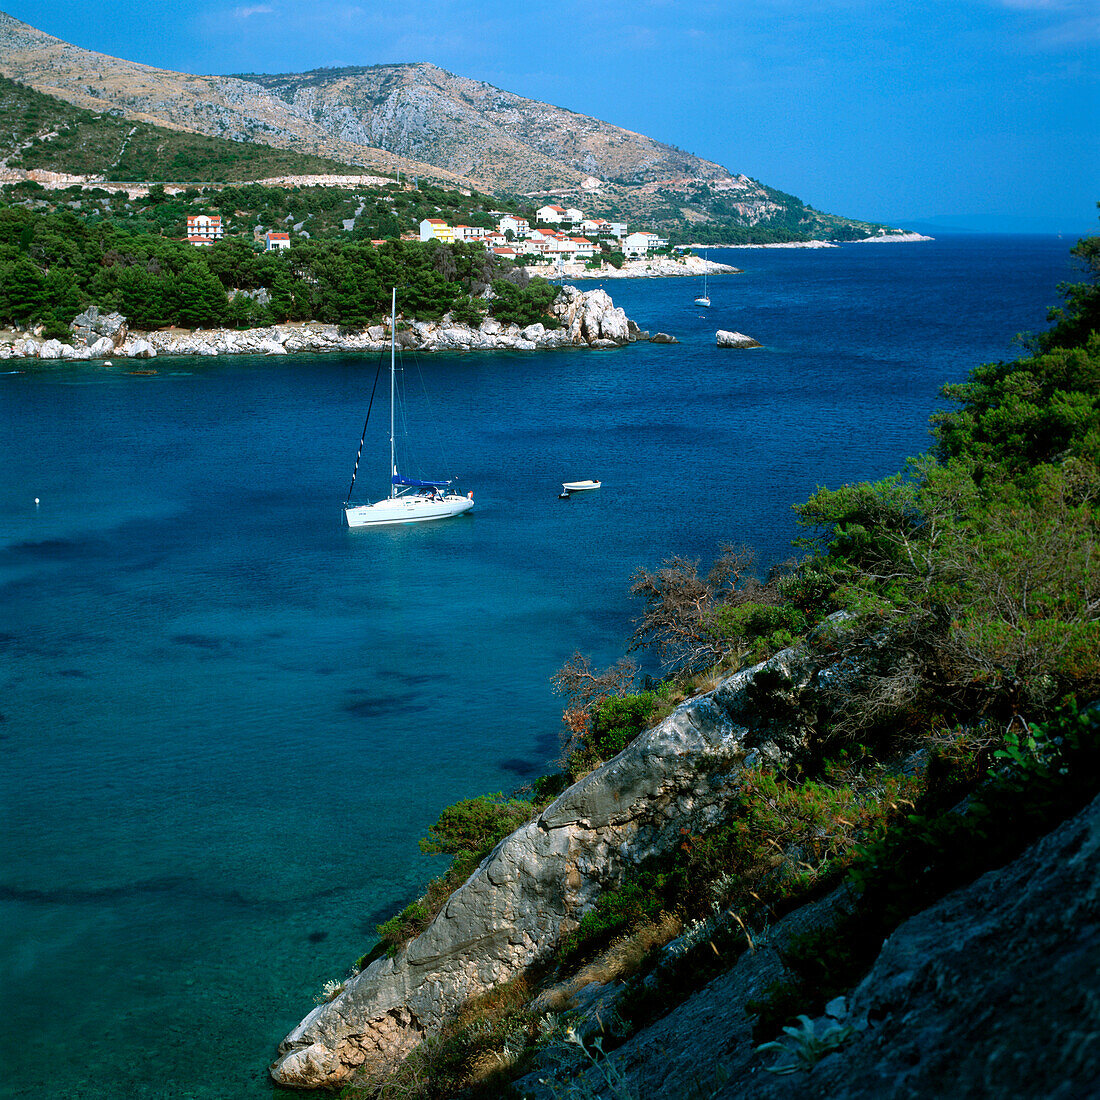 View over Croatian coast area with sailboat, Dalmatia, Croatia